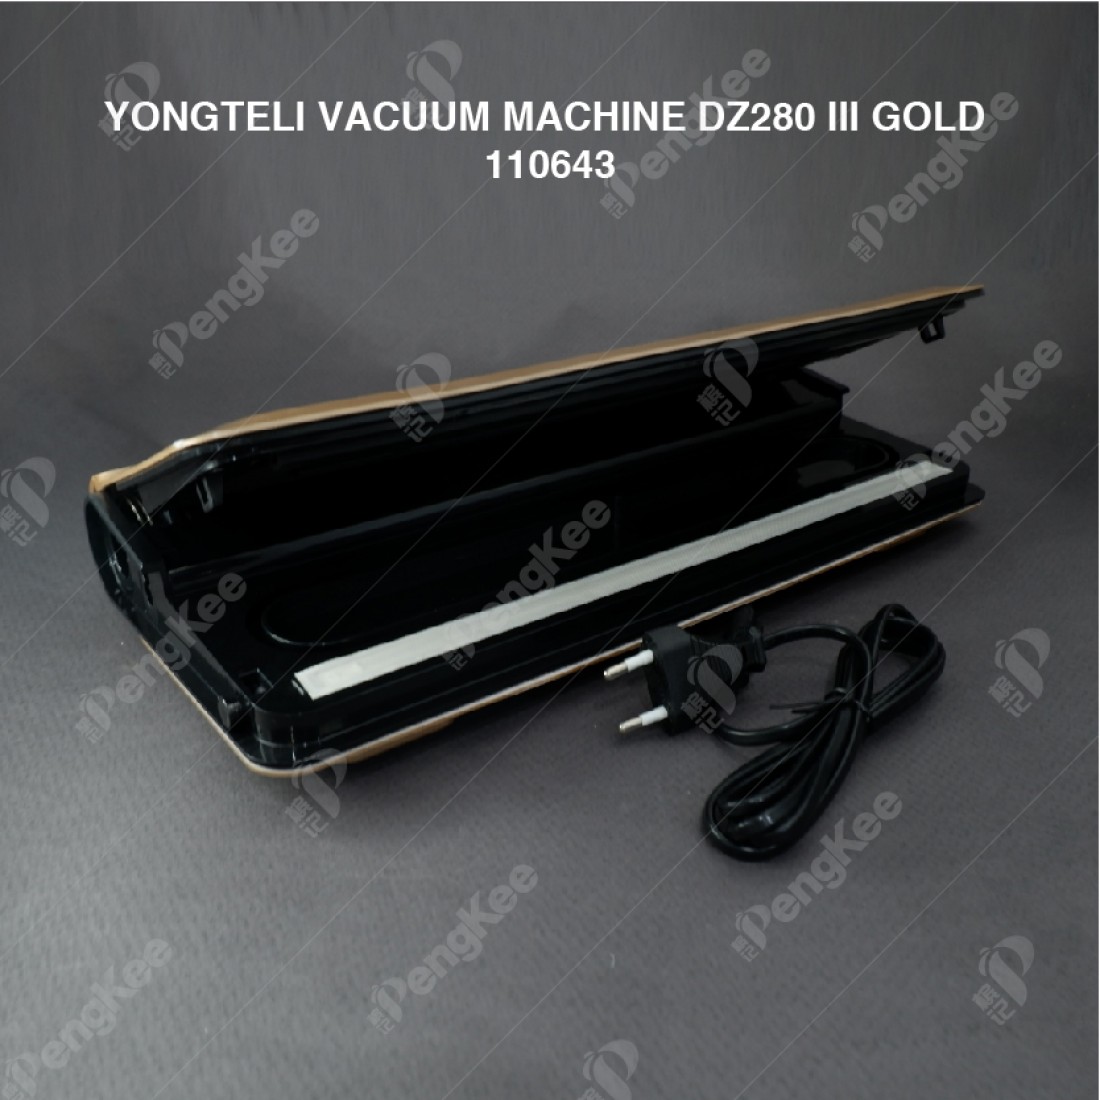 YONGTELI VACUUM MACHINE DZ280-III (GOLD)